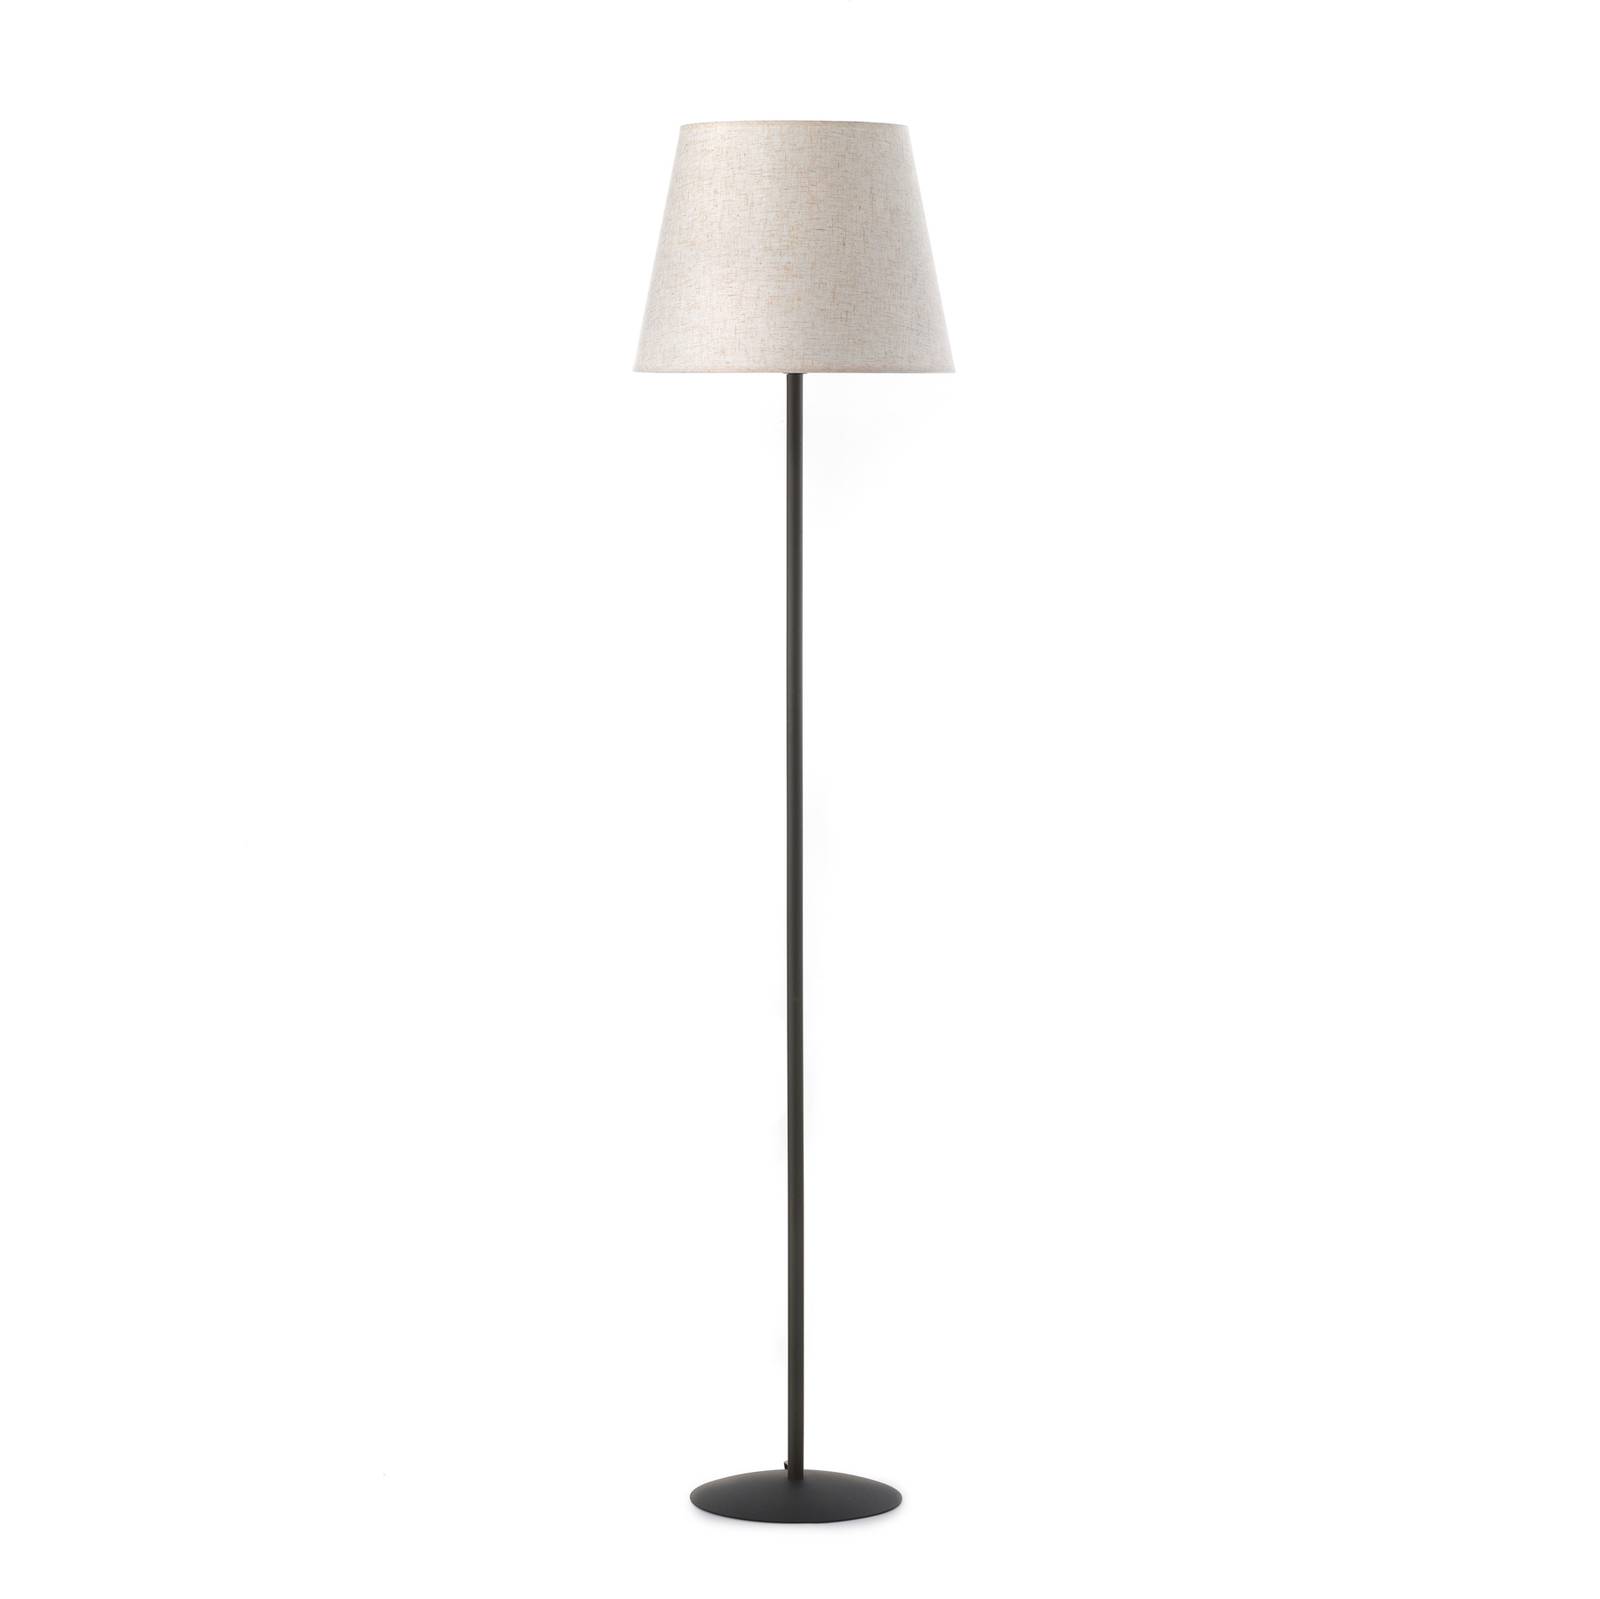 ONLI Loris floor lamp, black, sand beige lampshade